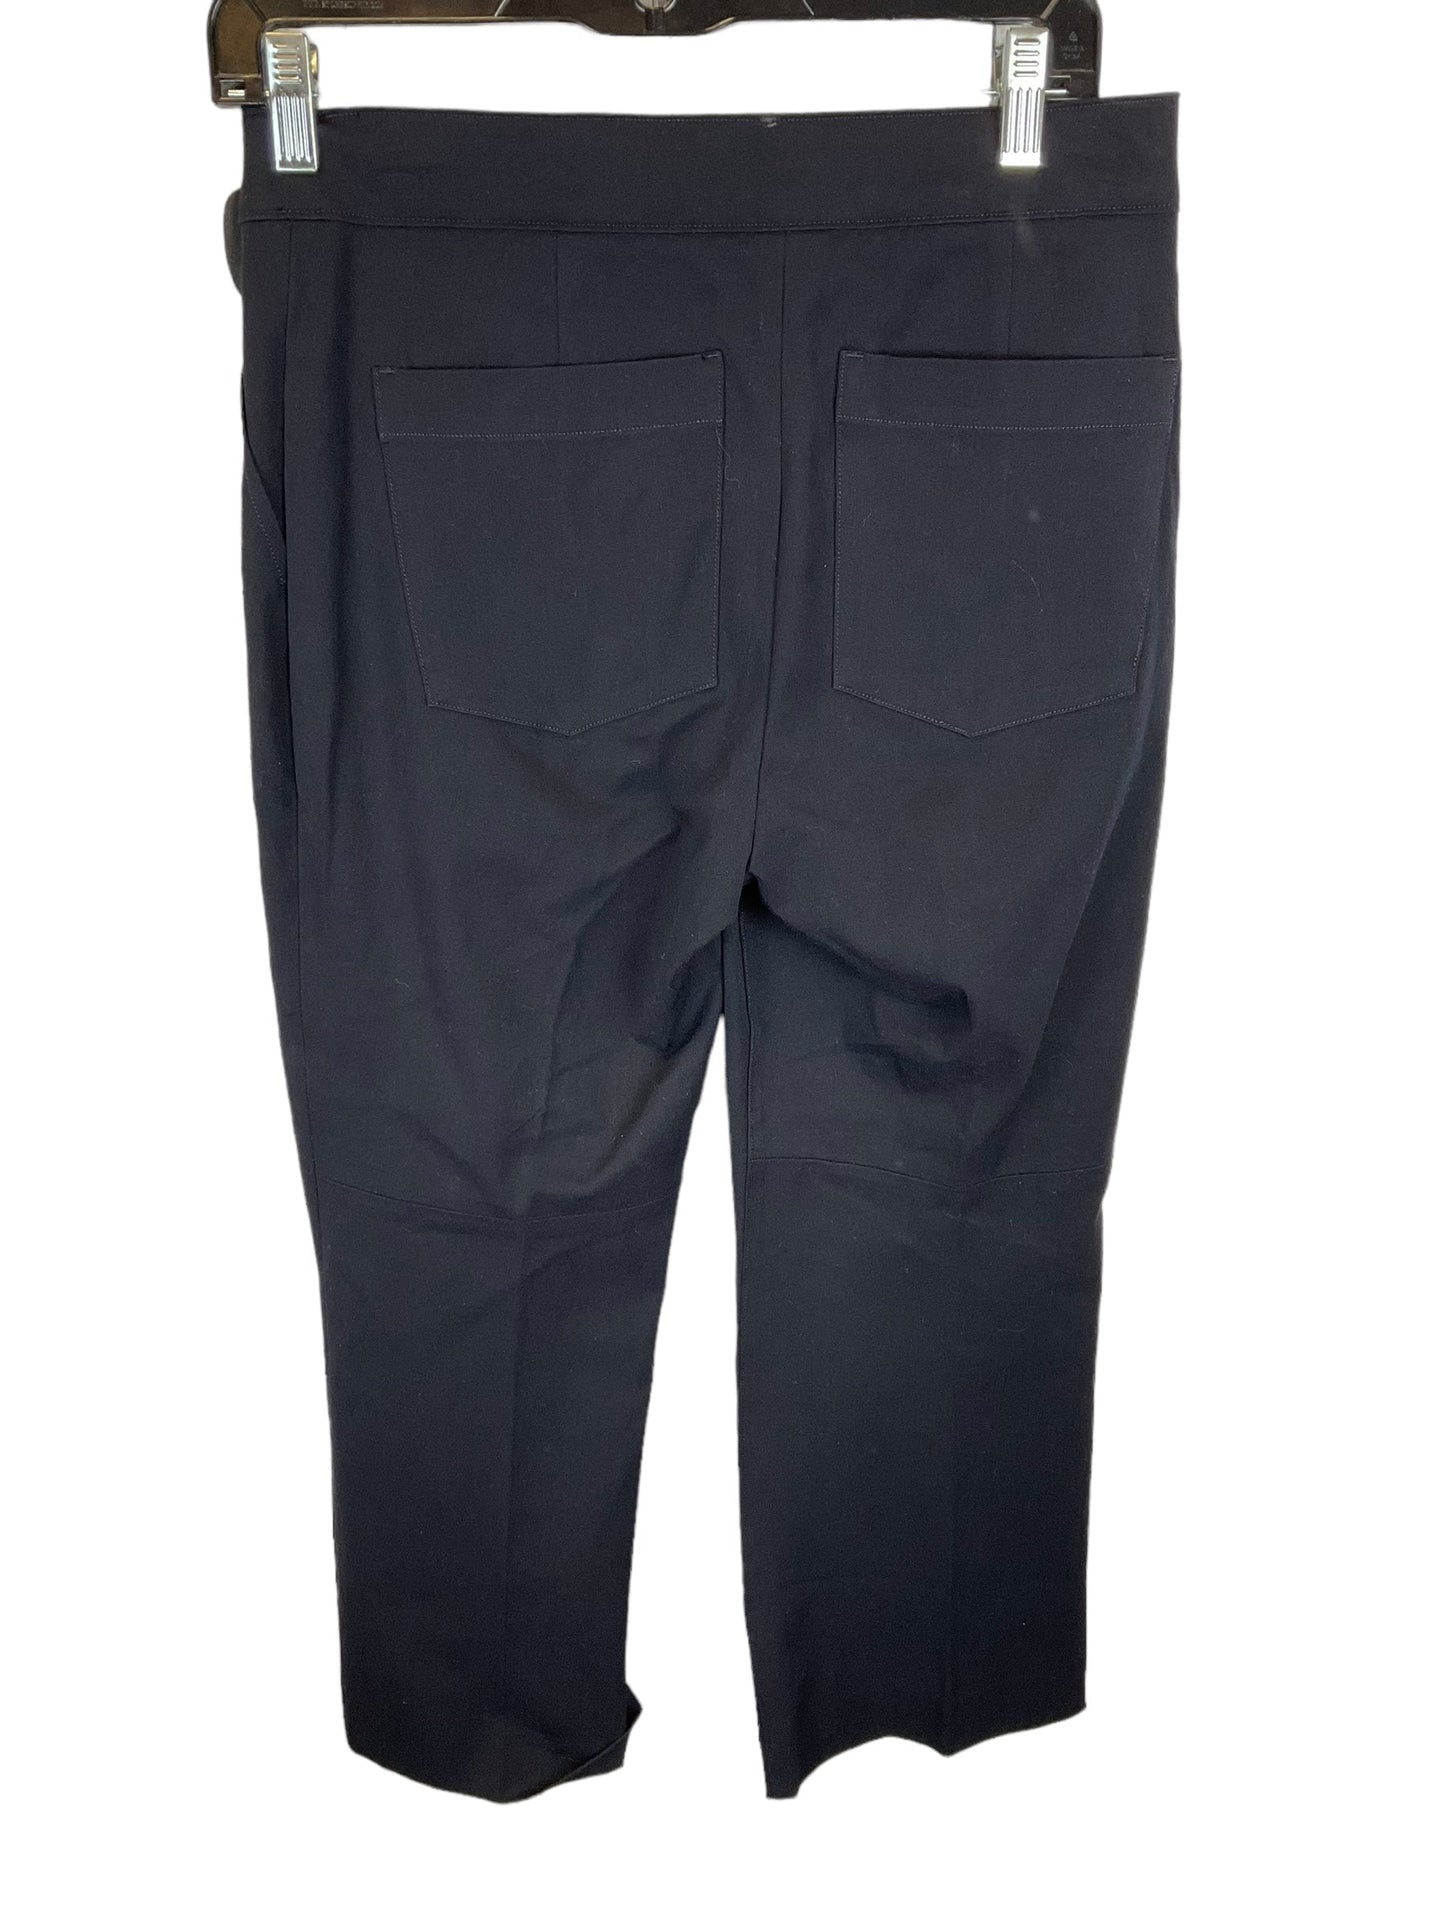 Navy Pants Dress Spanx, Size M